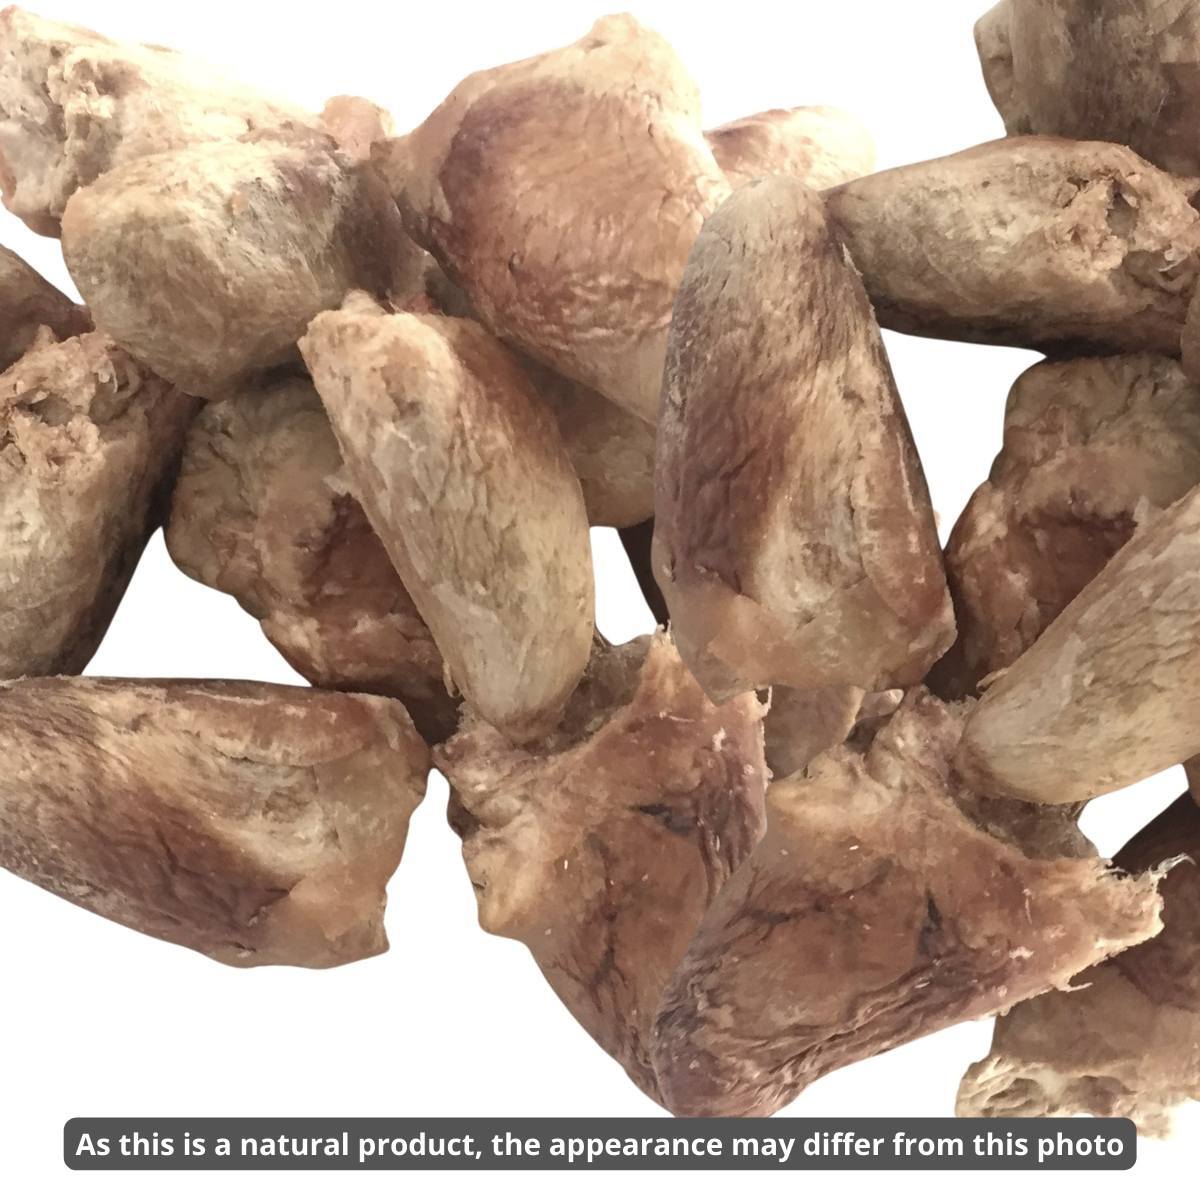 Meaty Treaty Freeze Dried Australian Chicken Hearts Cat & Dog Treats 100g-Treats-Dizzy Dog Collars